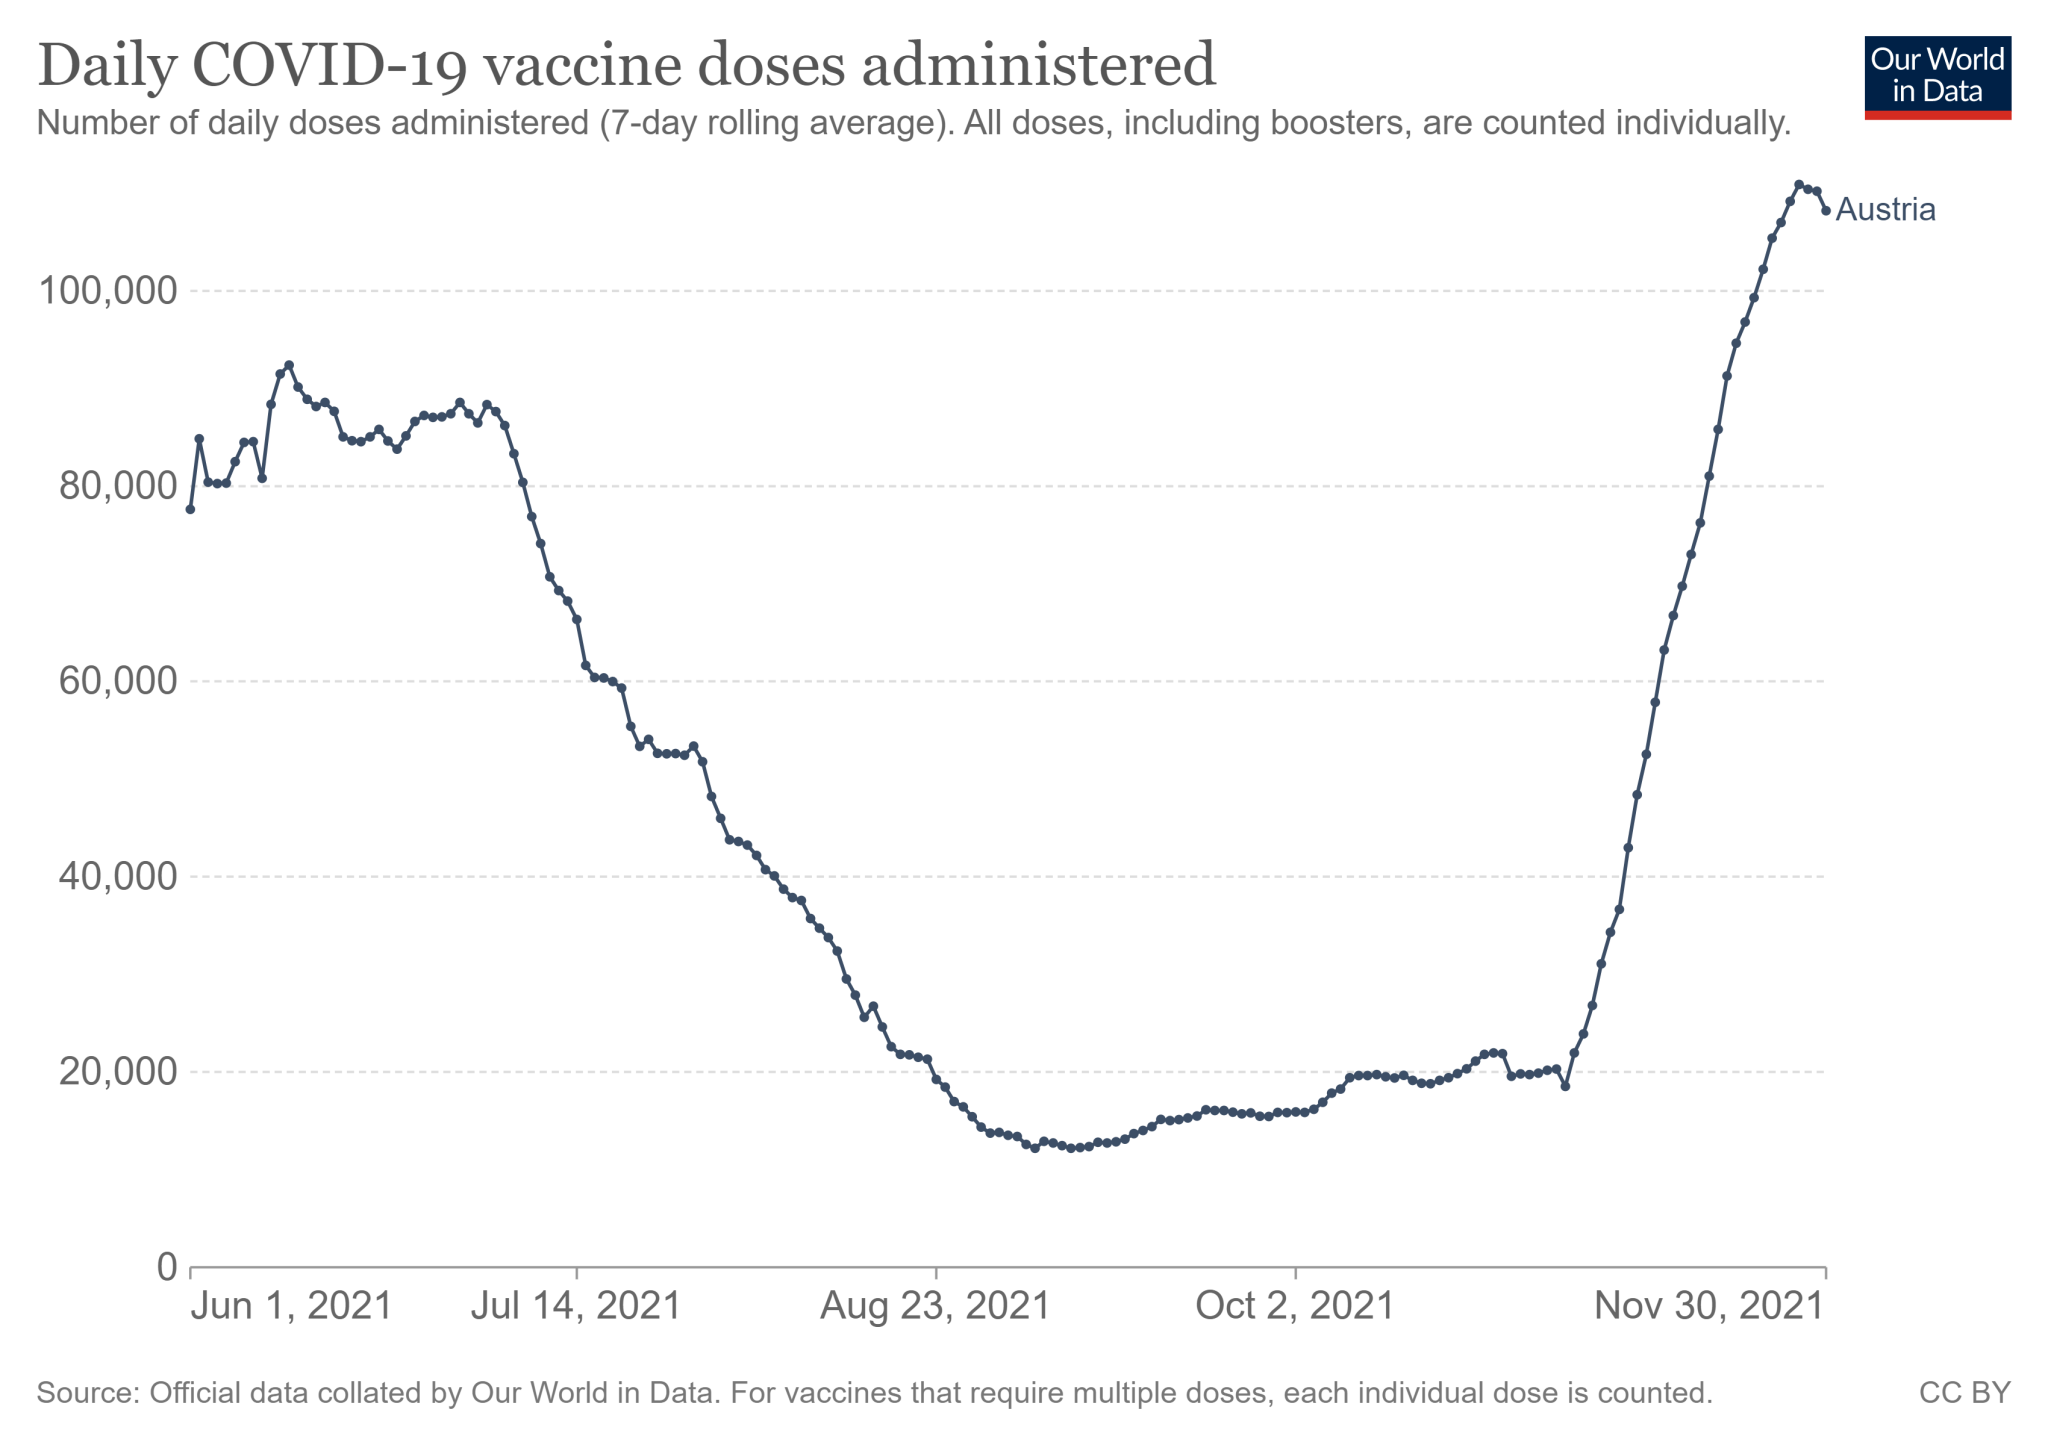 Austria: średnia tygodniowa liczba podanych dawek szczepionki na COVID-19 (od 1 czerwca do 30 listopada 2021)